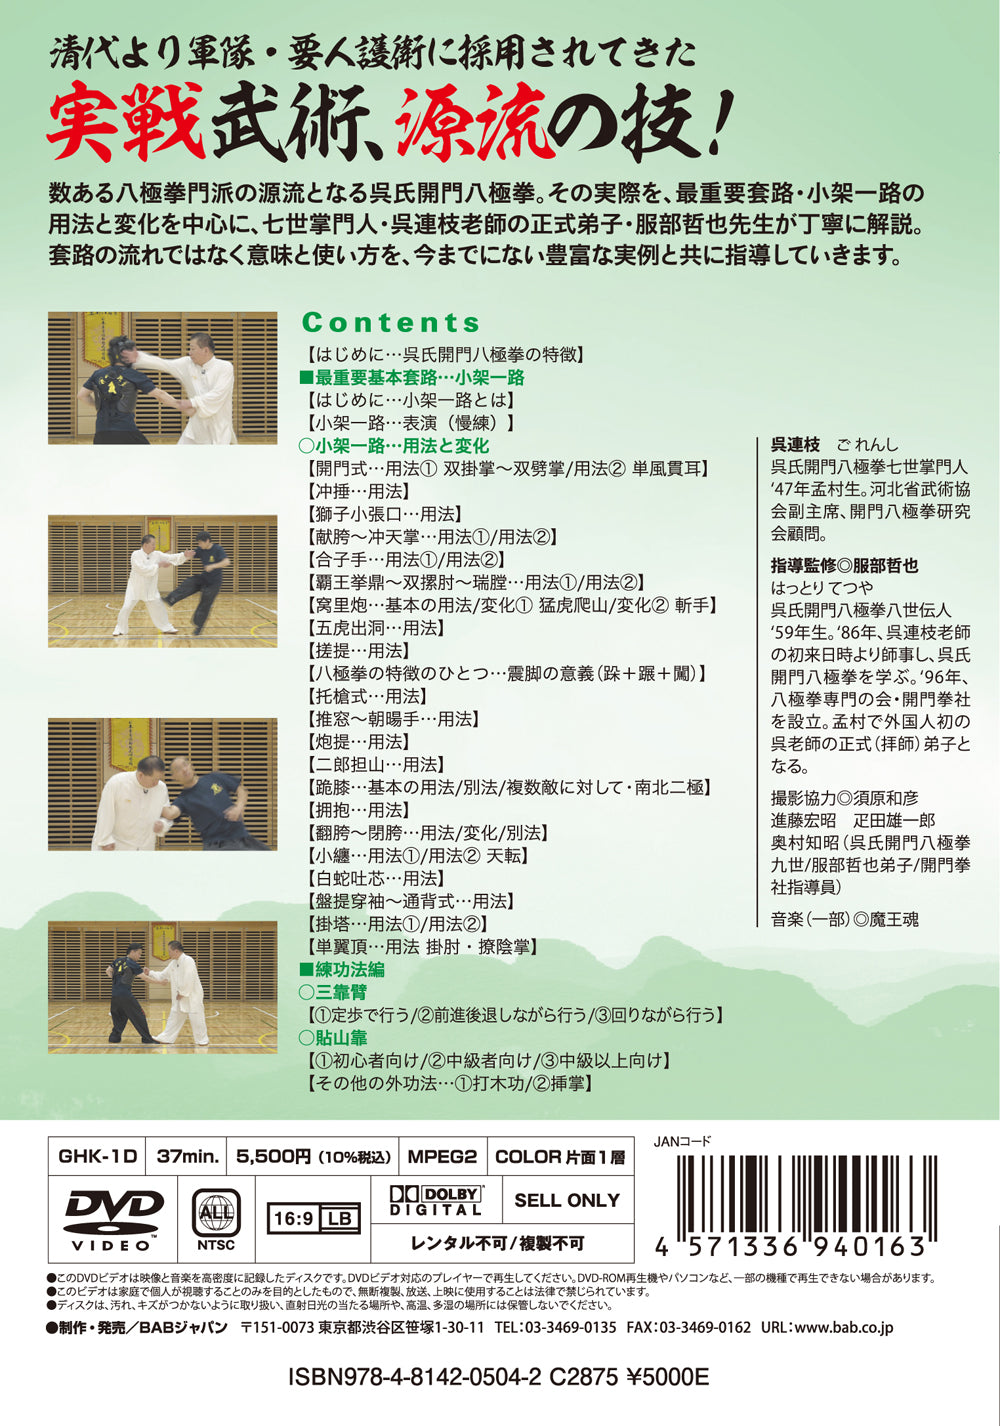 DVD de aplicación de Bajiquan de Tetsuya Hattori